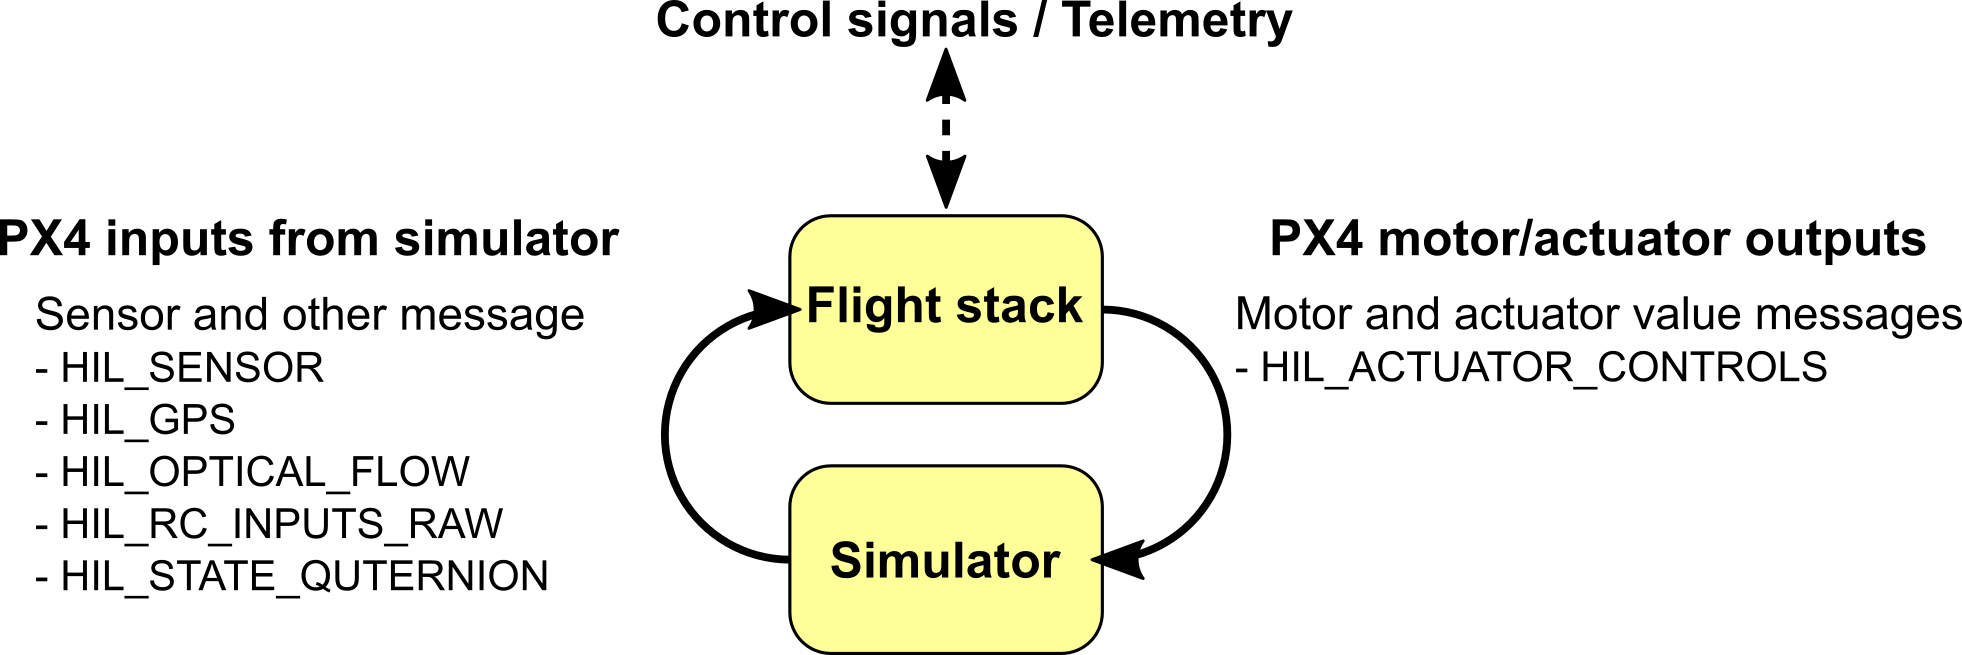 Simulator MAVLink API